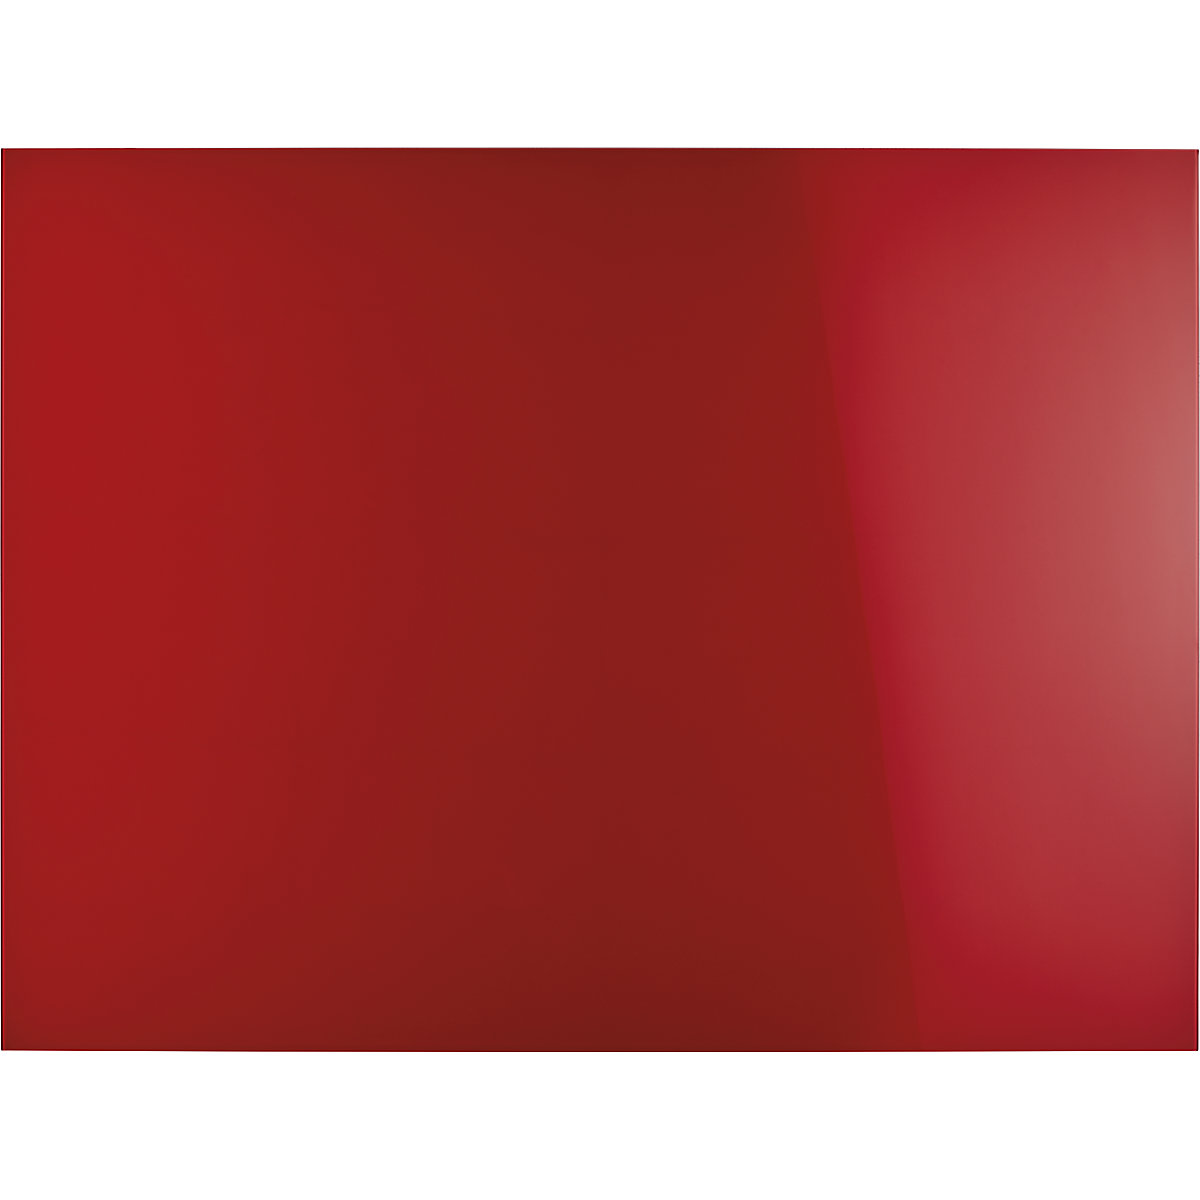 magnetoplan – Panel de cristal de diseño, magnético, A x H 1200 x 900 mm, color rojo intenso